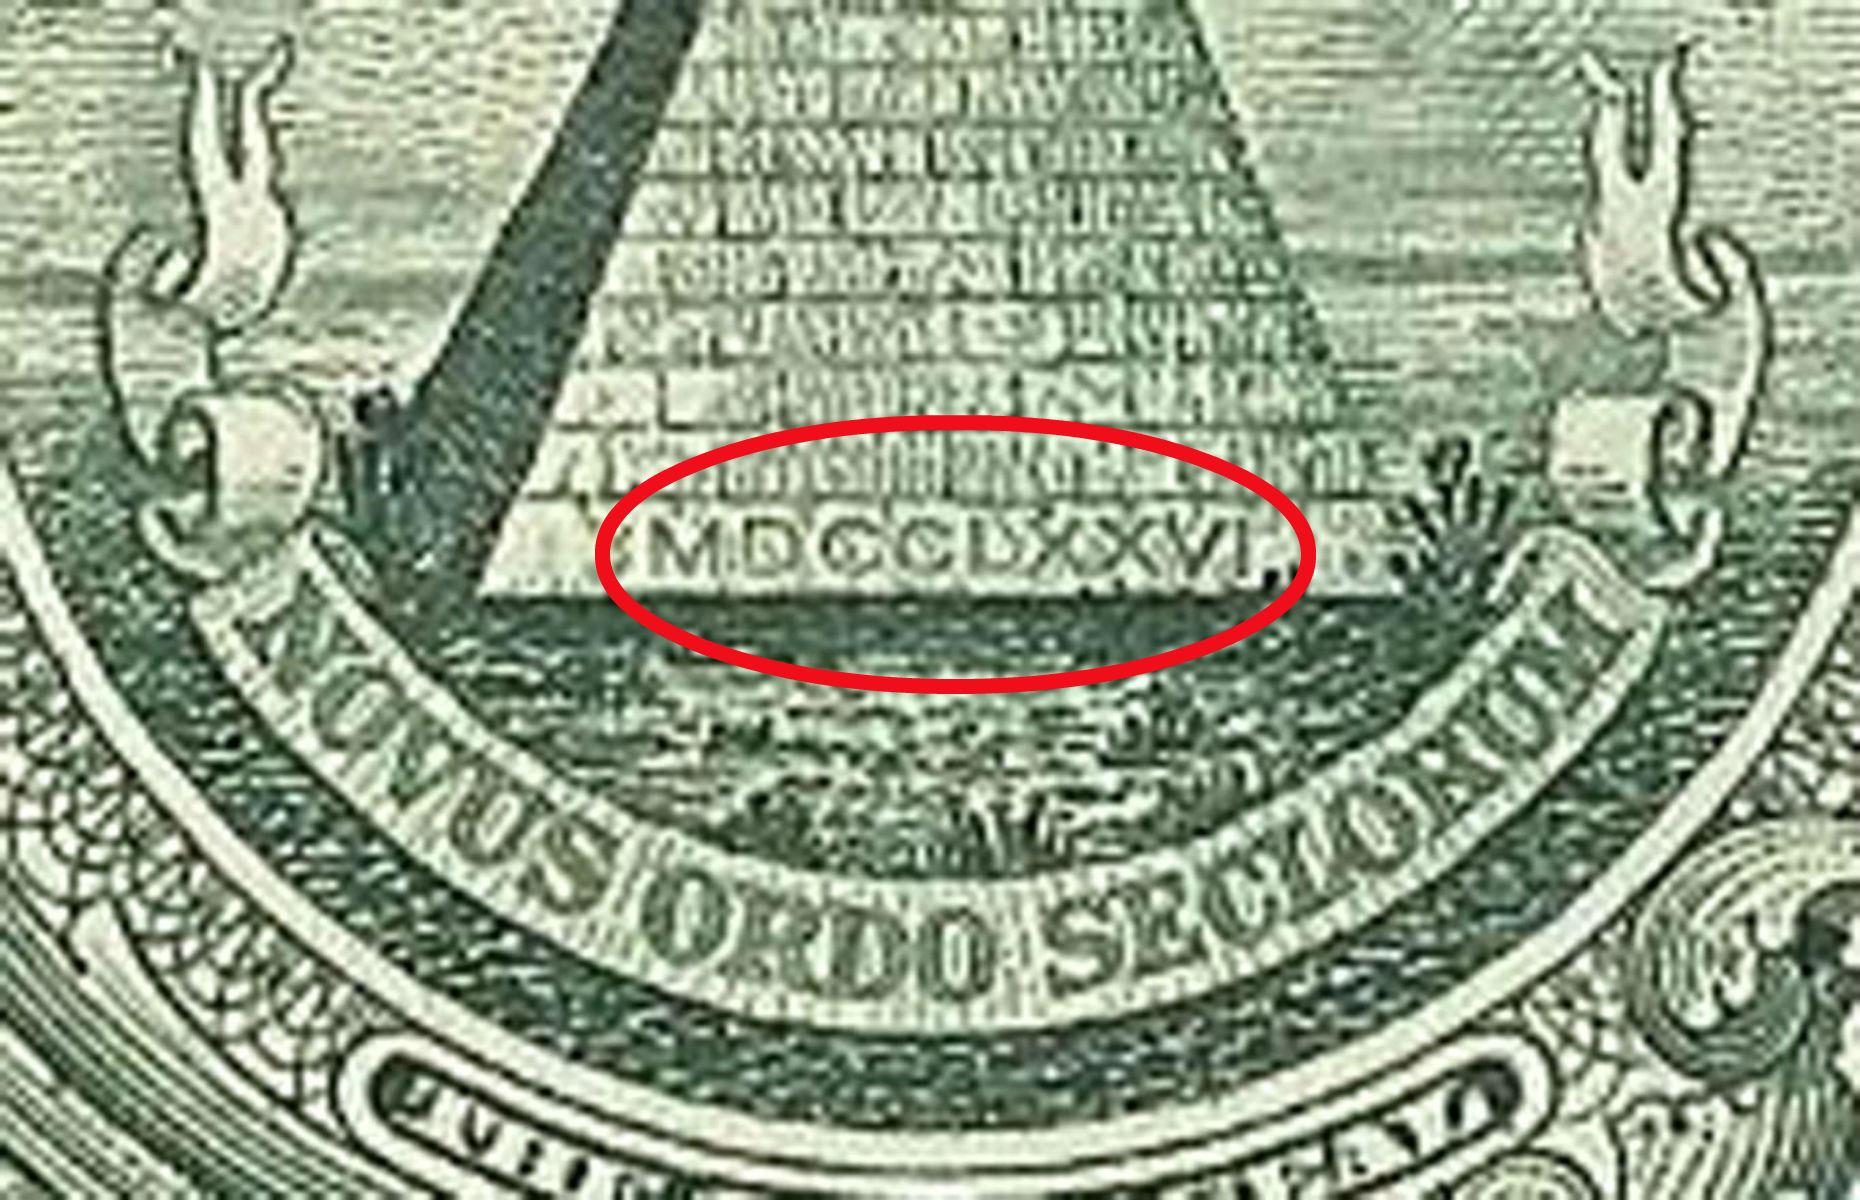 US $1 bill: Roman numerals 